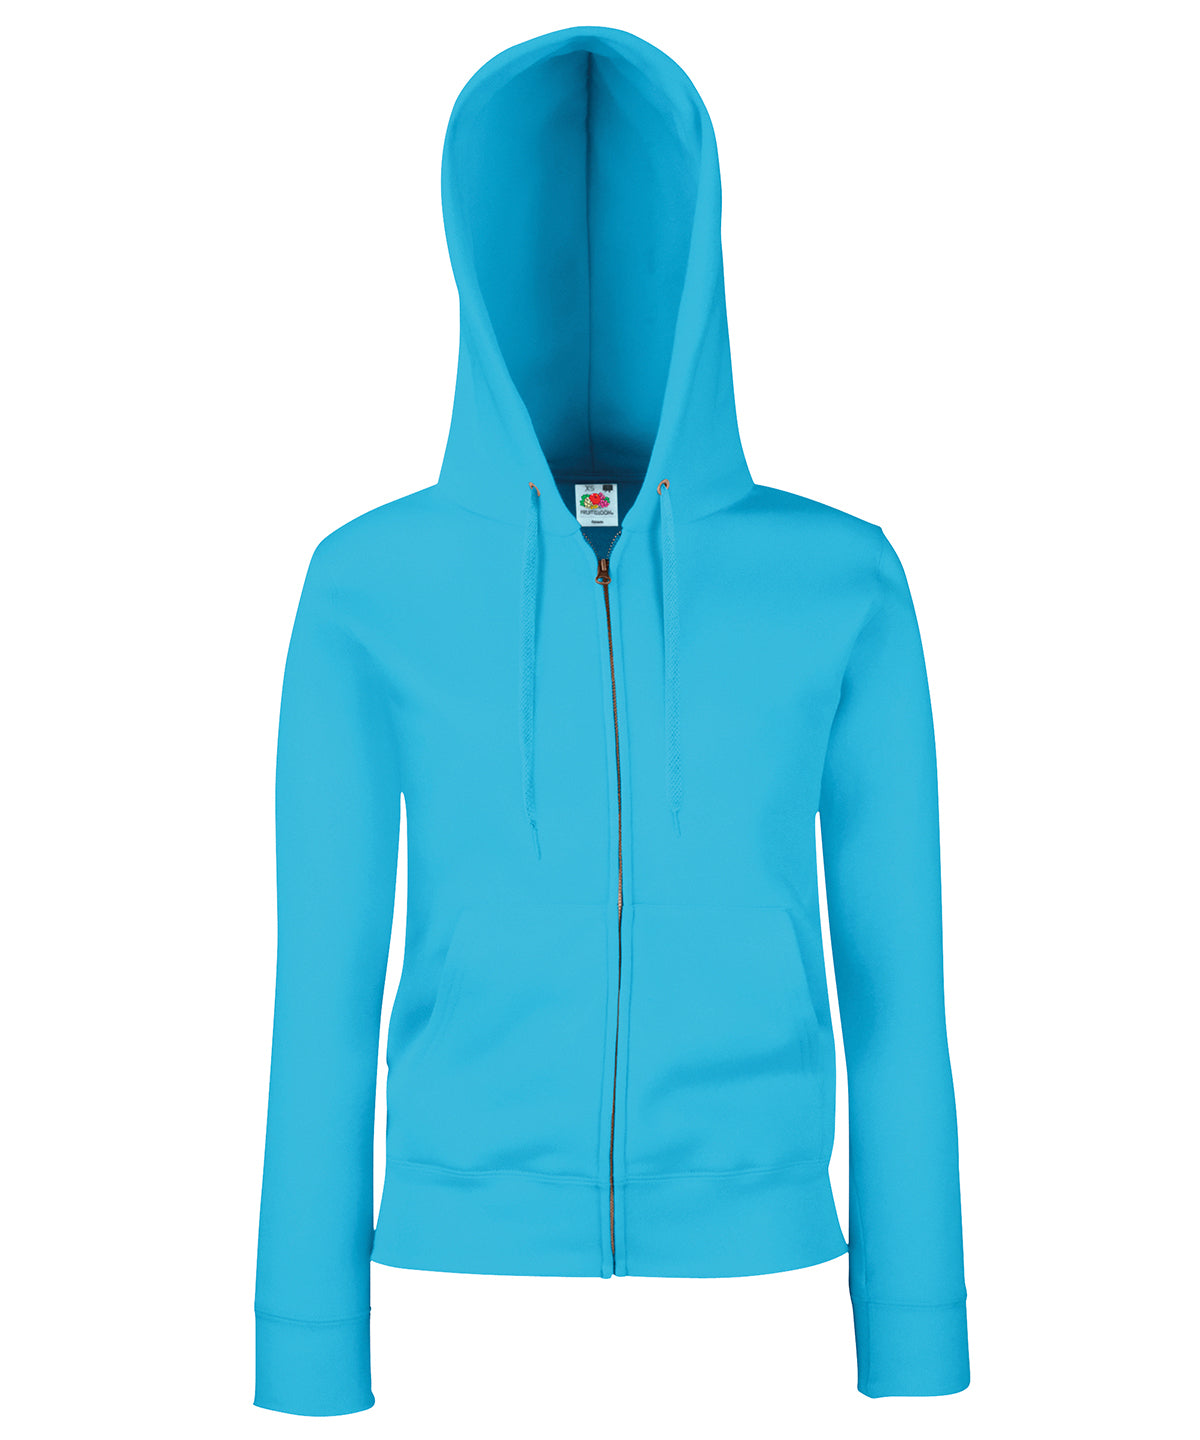 Personalised Hoodies - Mid Blue Fruit of the Loom Women's premium 70/30 hooded sweatshirt jacket